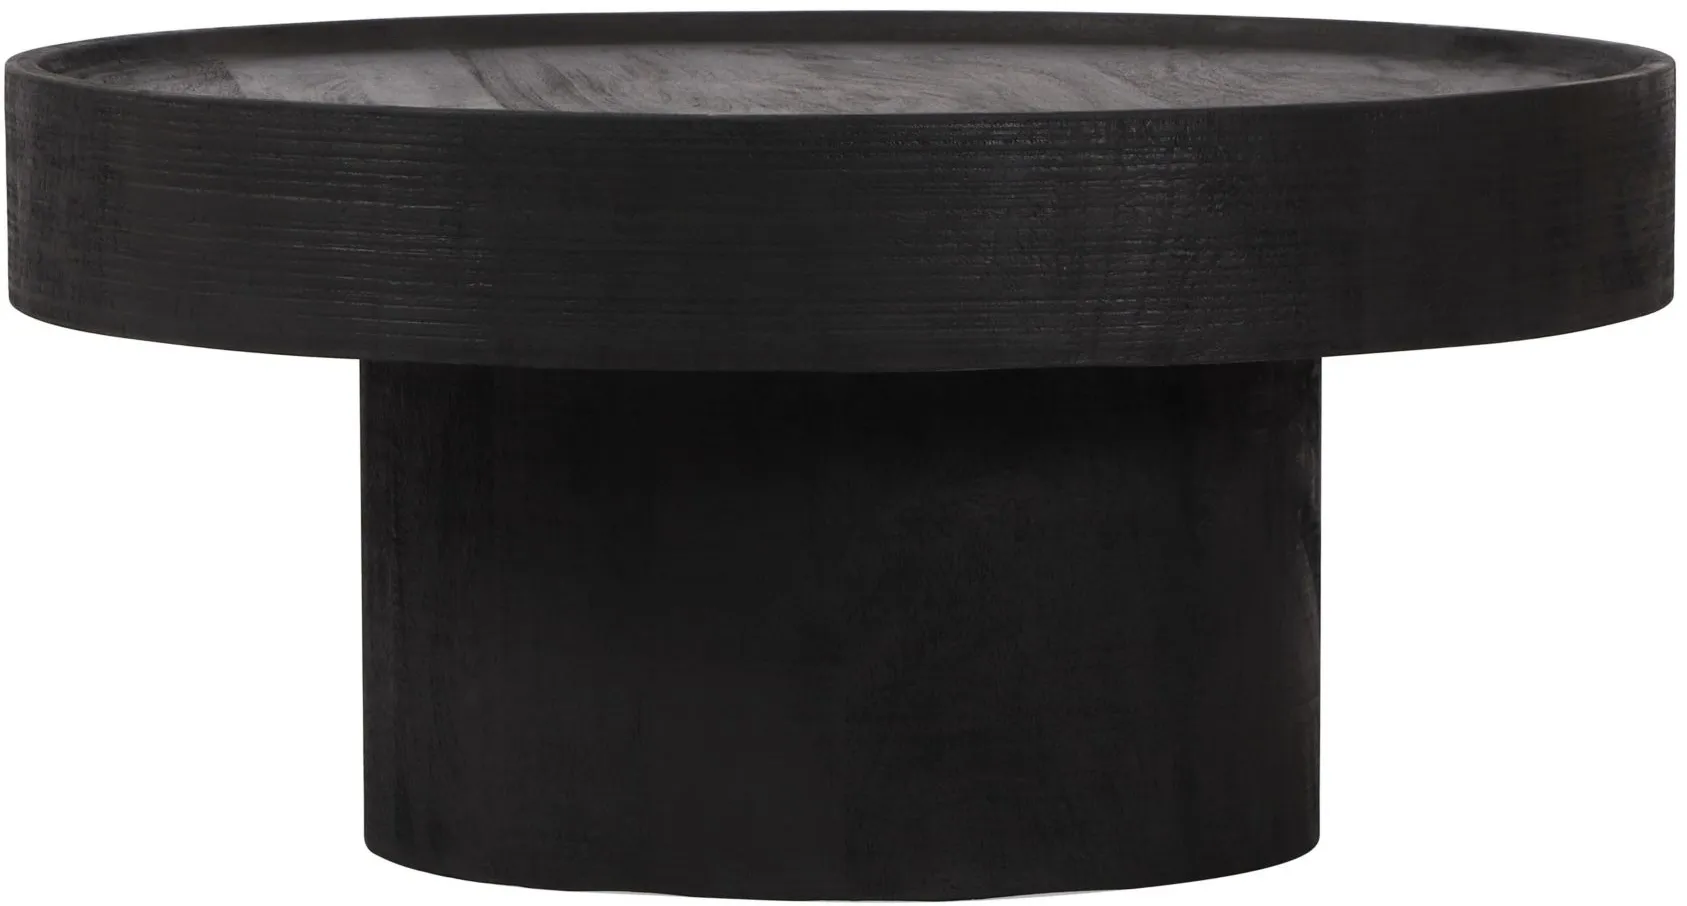 Watson Coffee Table in Black by Zuo Modern